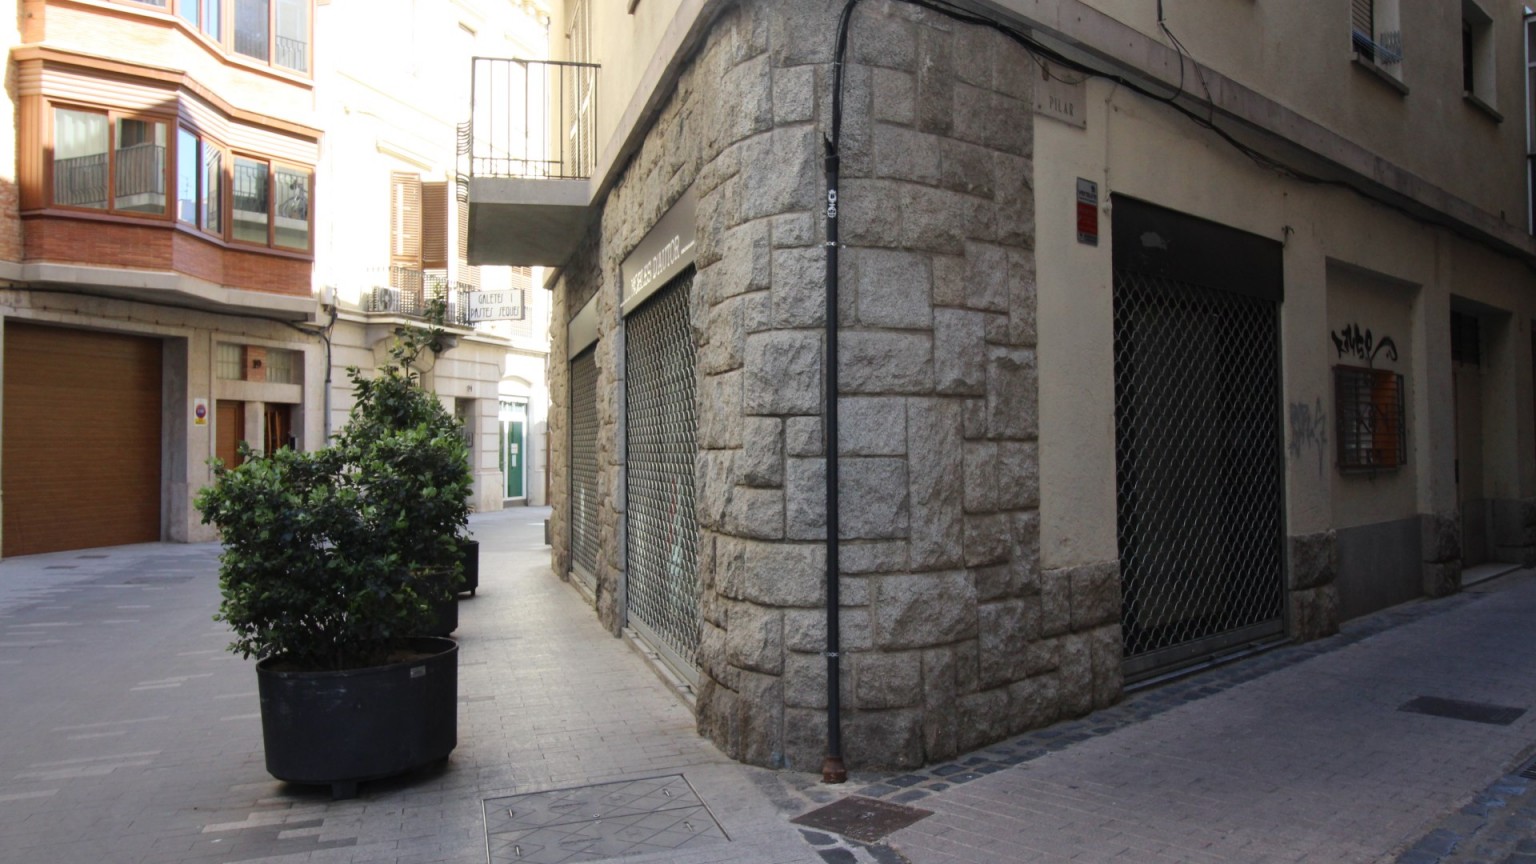 Local de alquiler, en el centro de Figueres. 